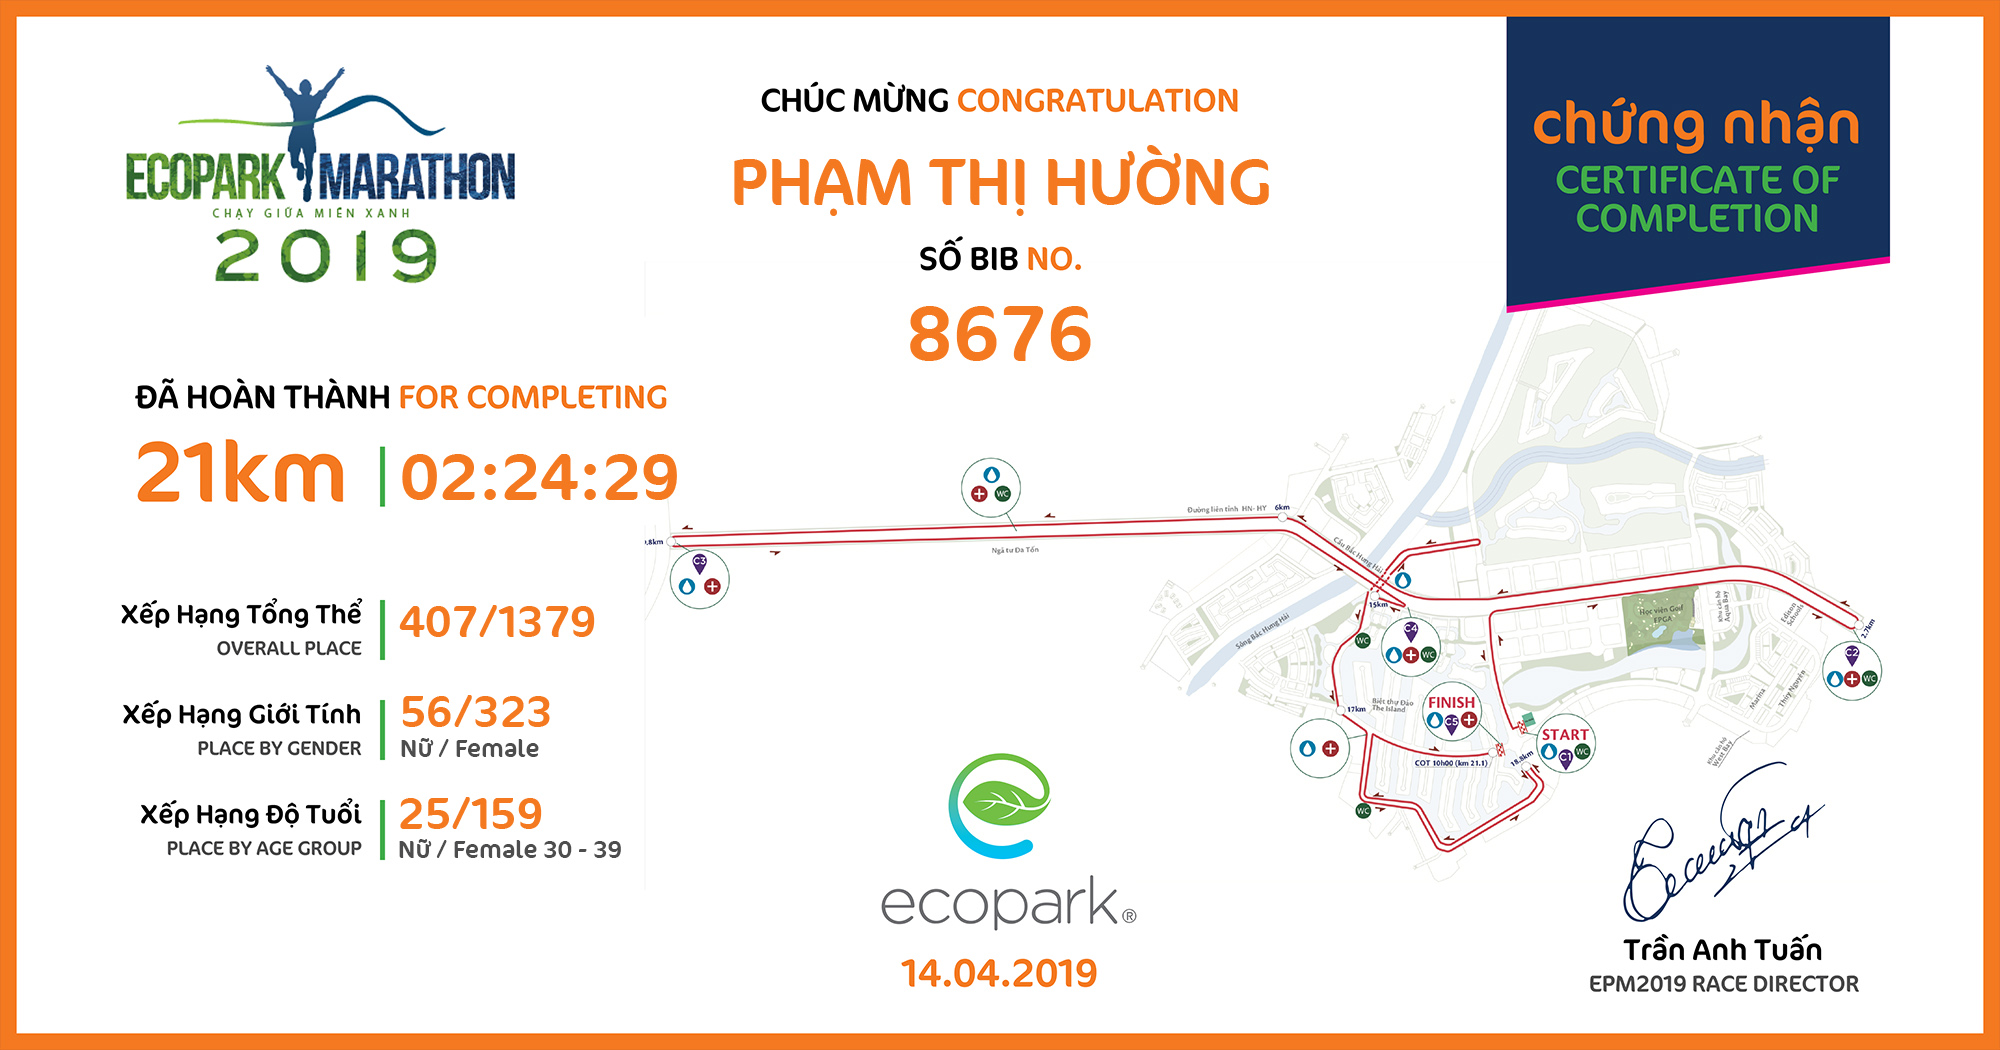 8676 - Phạm Thị Hường